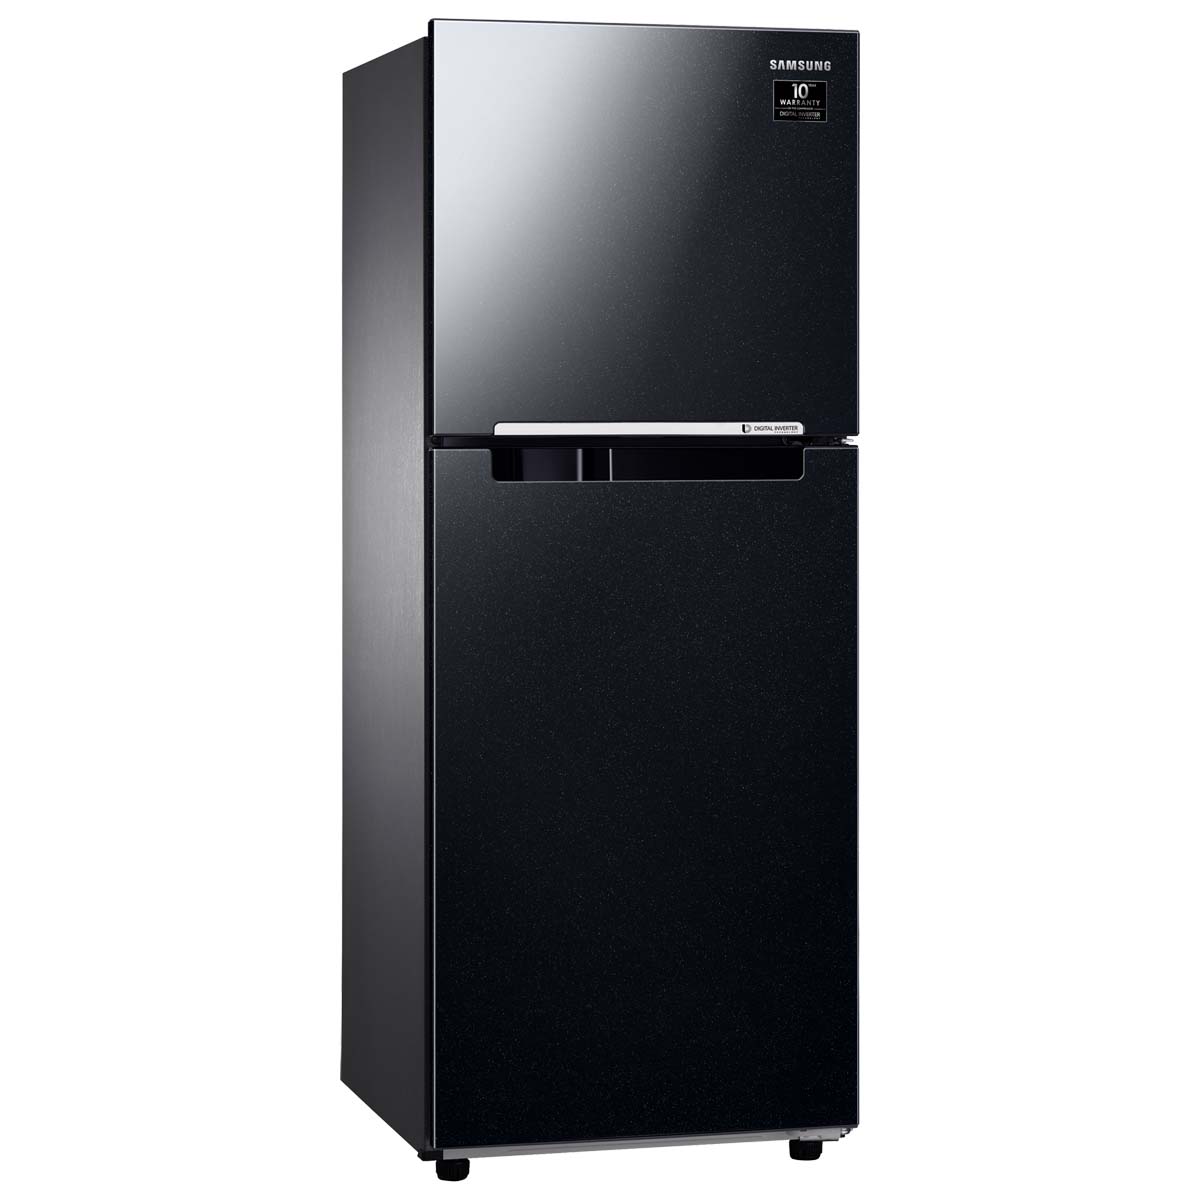 Tủ lạnh Samsung inverter 208 lít RT20HAR8DBU